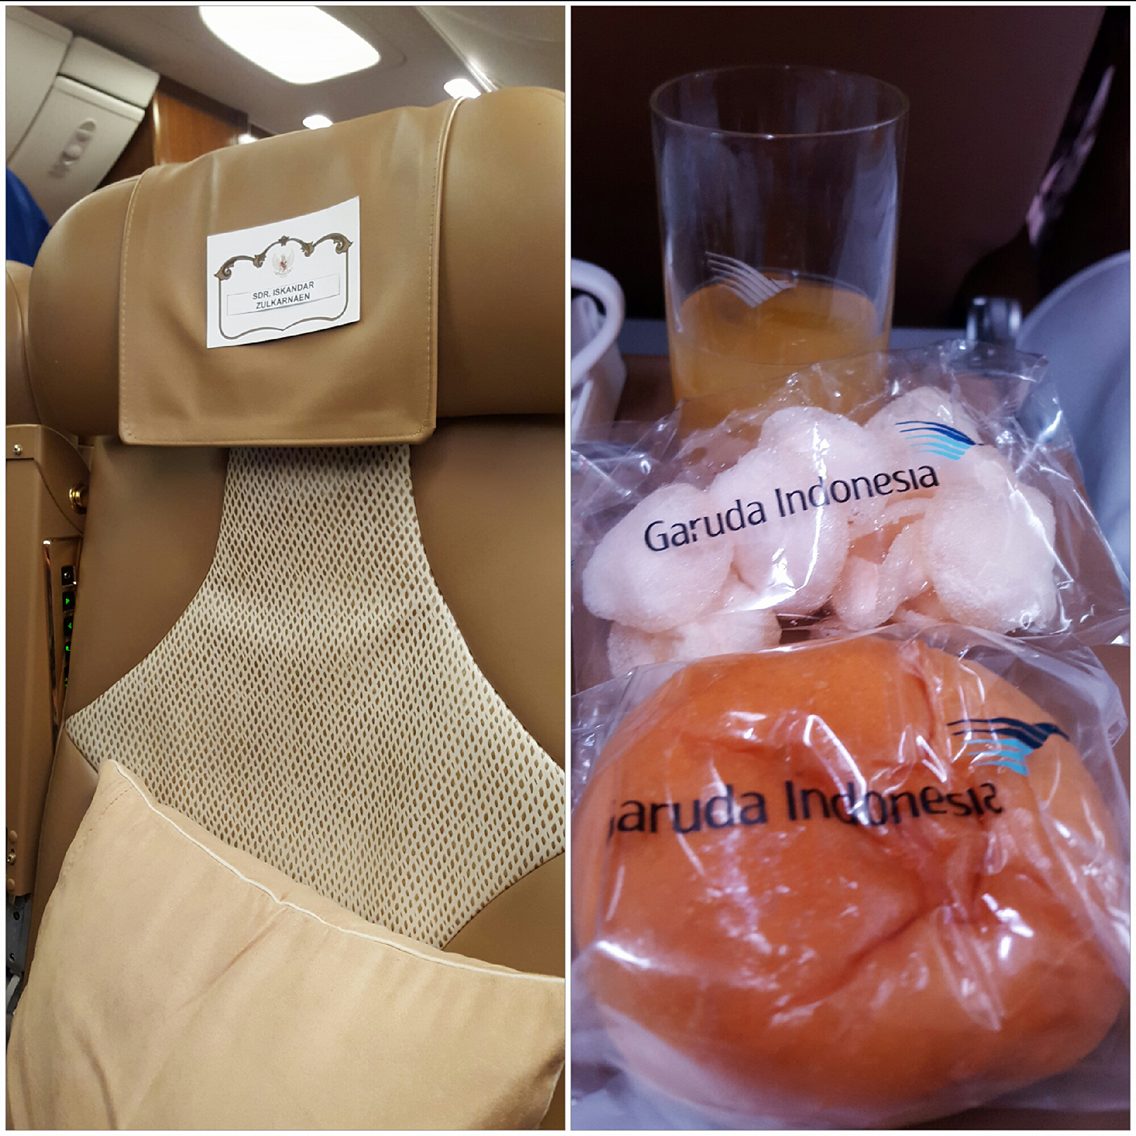 Semua tempat duduk di pesawat presiden sudah ada namanya. Bungkus makanan juga ada namanya, maksud saya, ada logo Garuda Indonesianya.. (@iskandarjet)